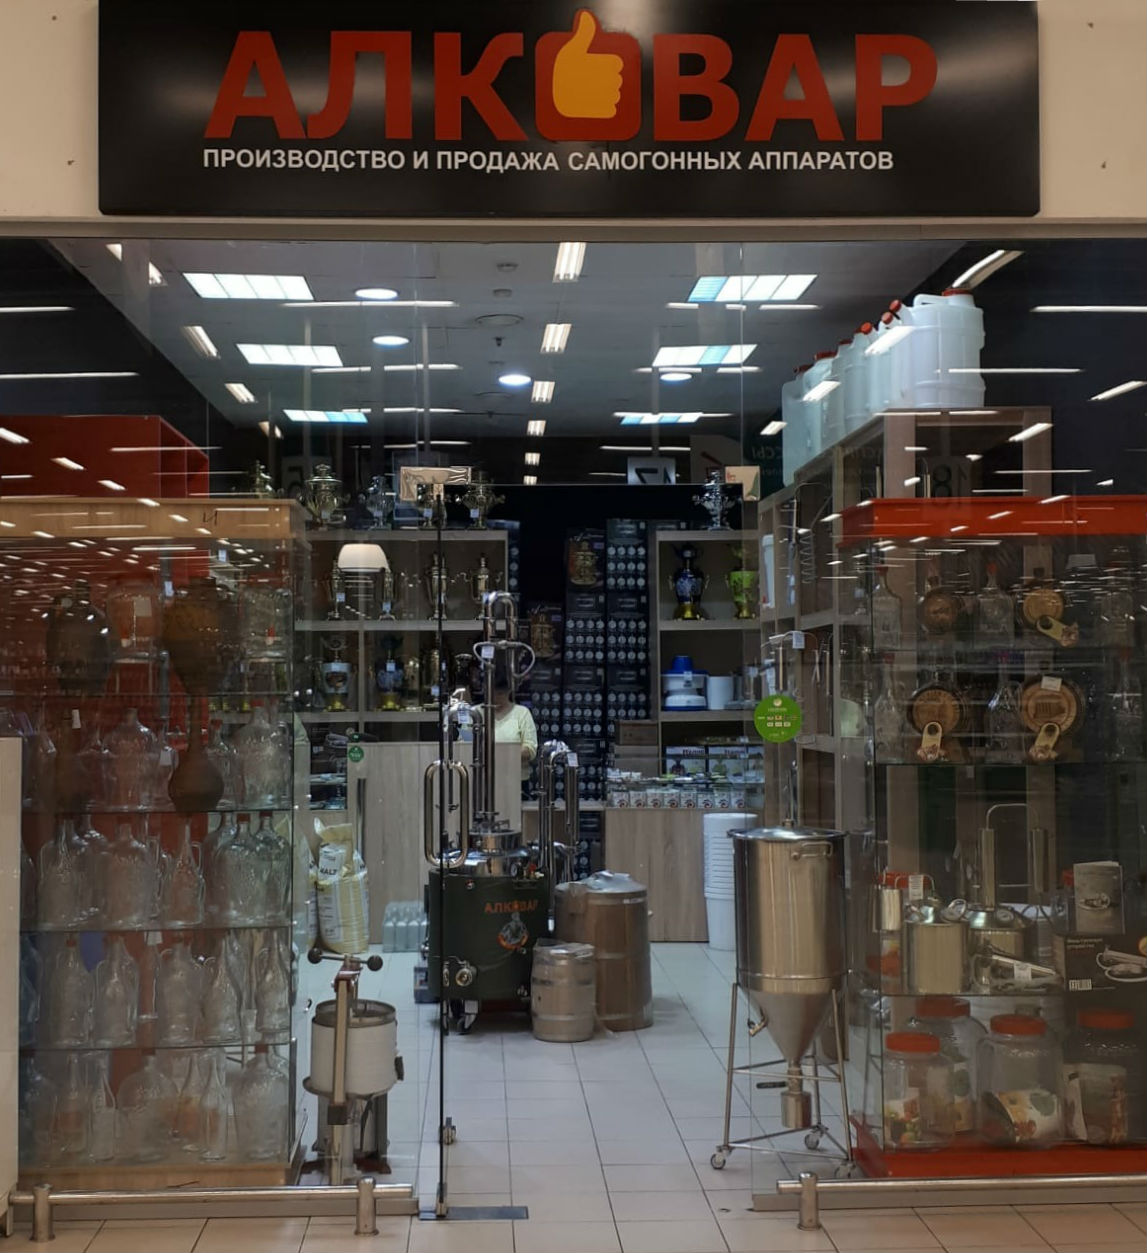 Магазин самогонных аппаратов АЛКОВАР в Нижнем Новгороде в Окее на Проспекте Ленина